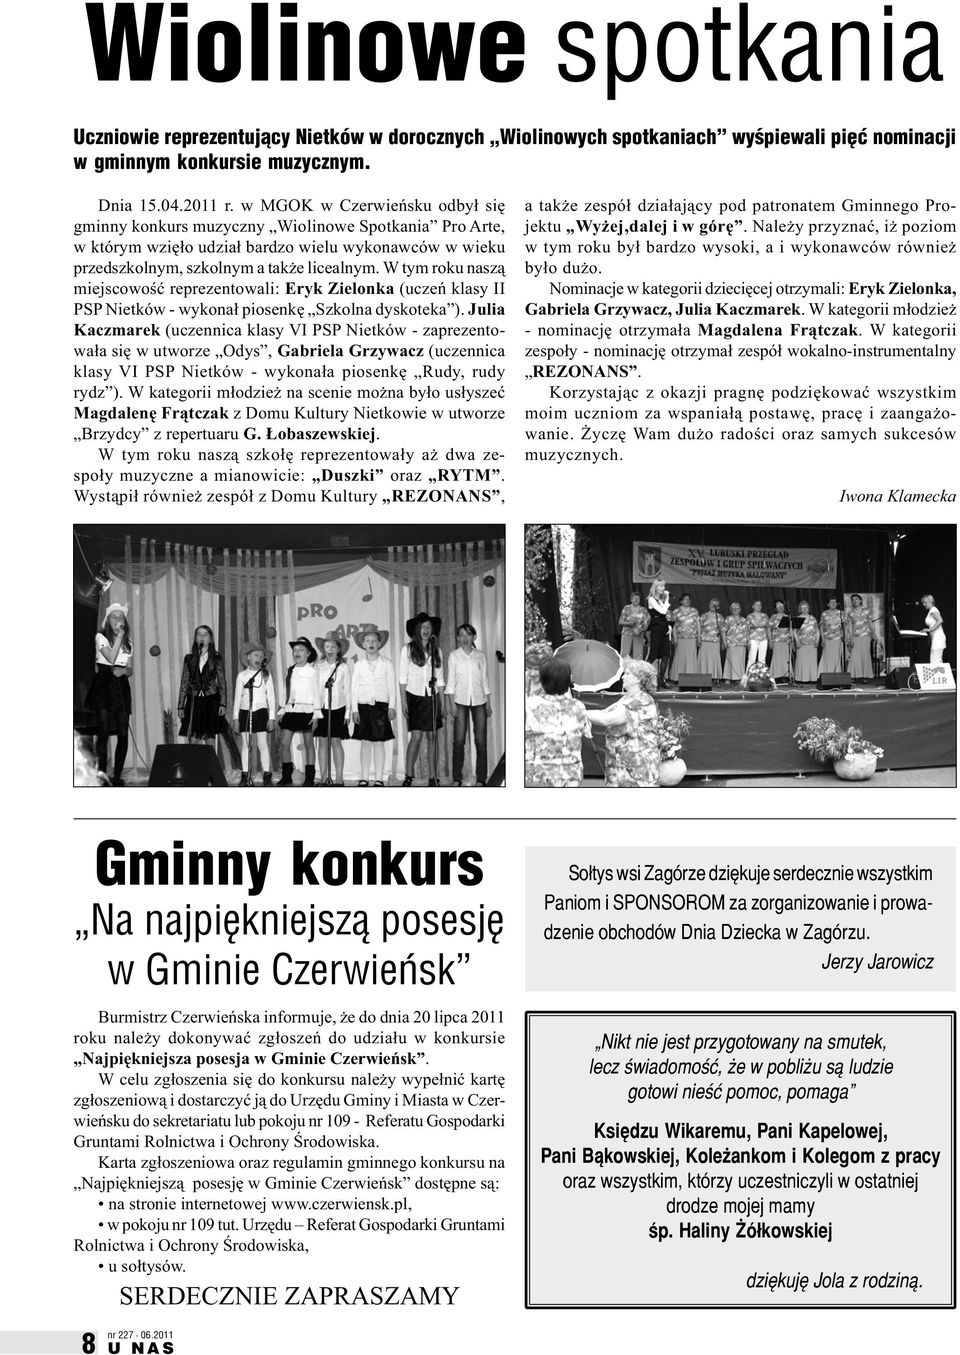 W tym roku naszą miejscowość reprezentowali: Eryk Zielonka (uczeń klasy II PSP Nietków - wykonał piosenkę Szkolna dyskoteka ).